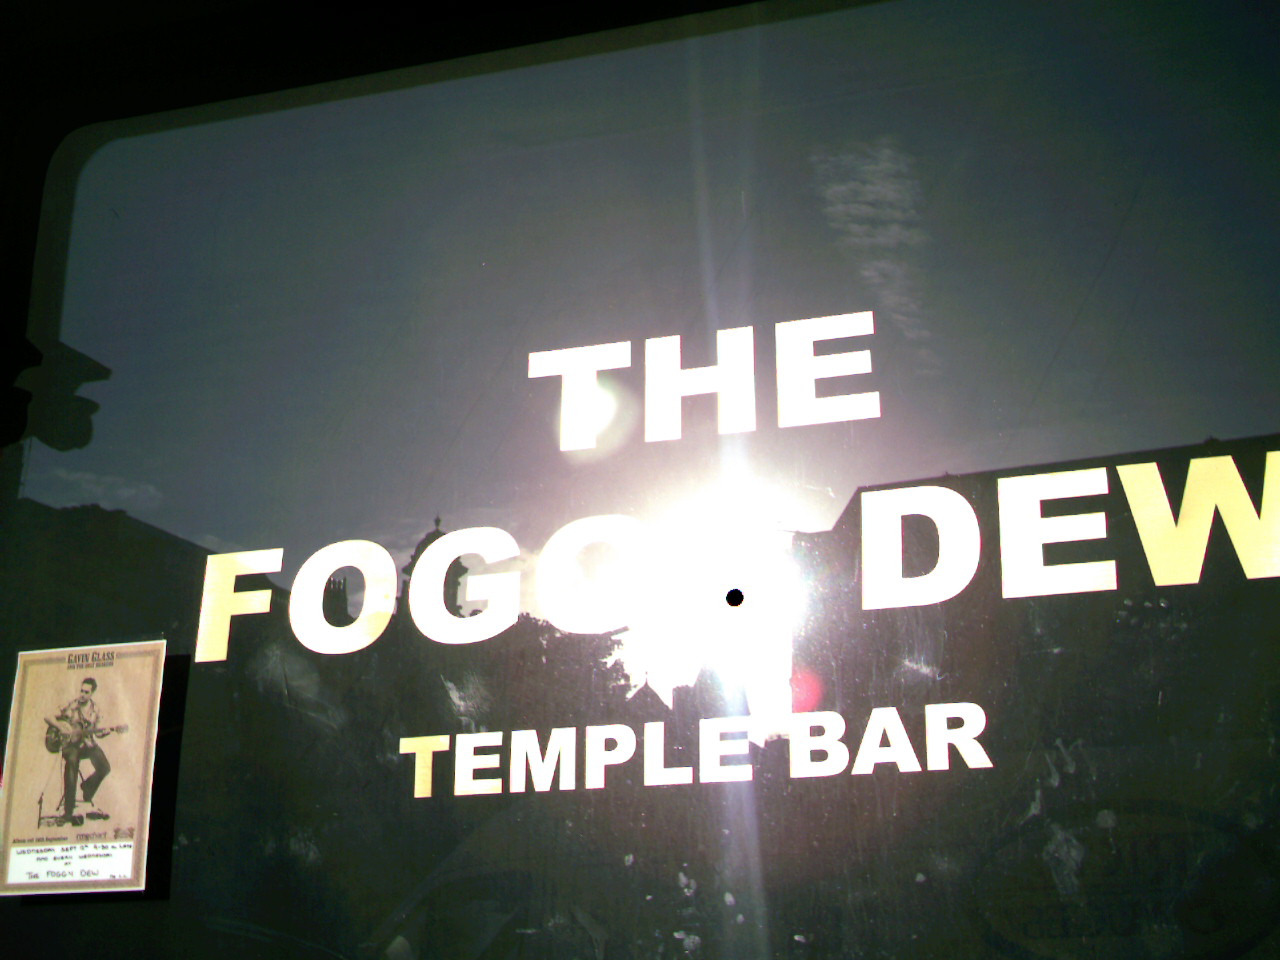 The Foggy Dew Bar, Templebar